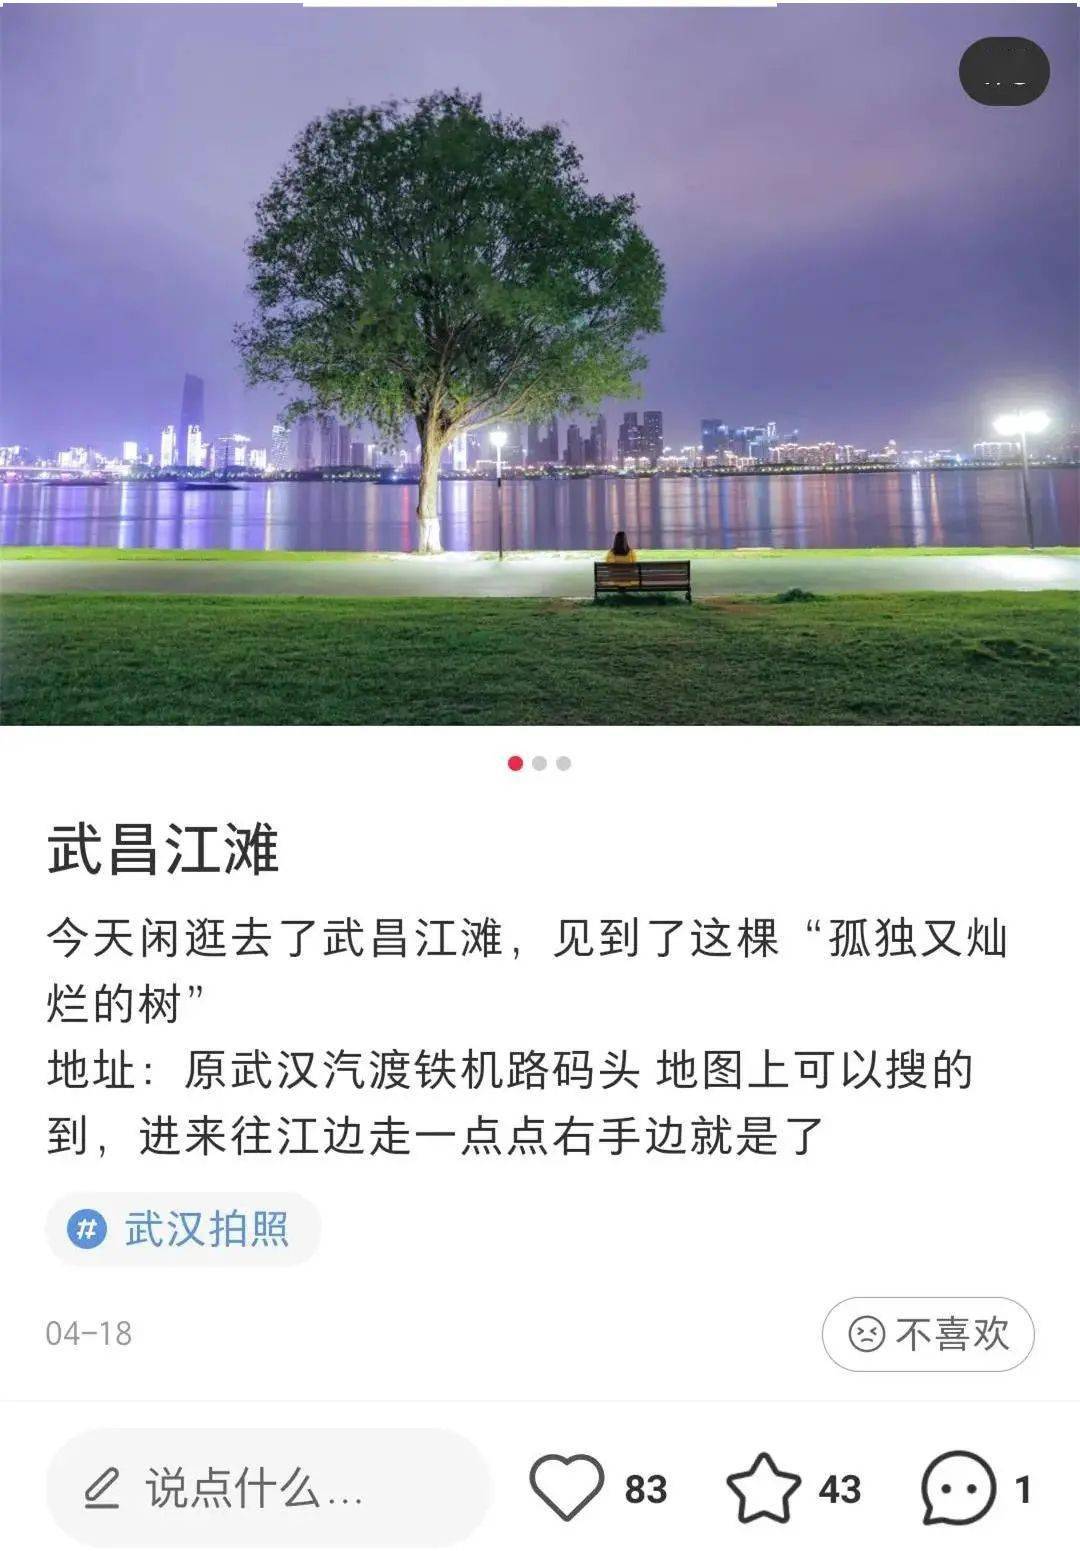 武昌江滩边有棵树火了